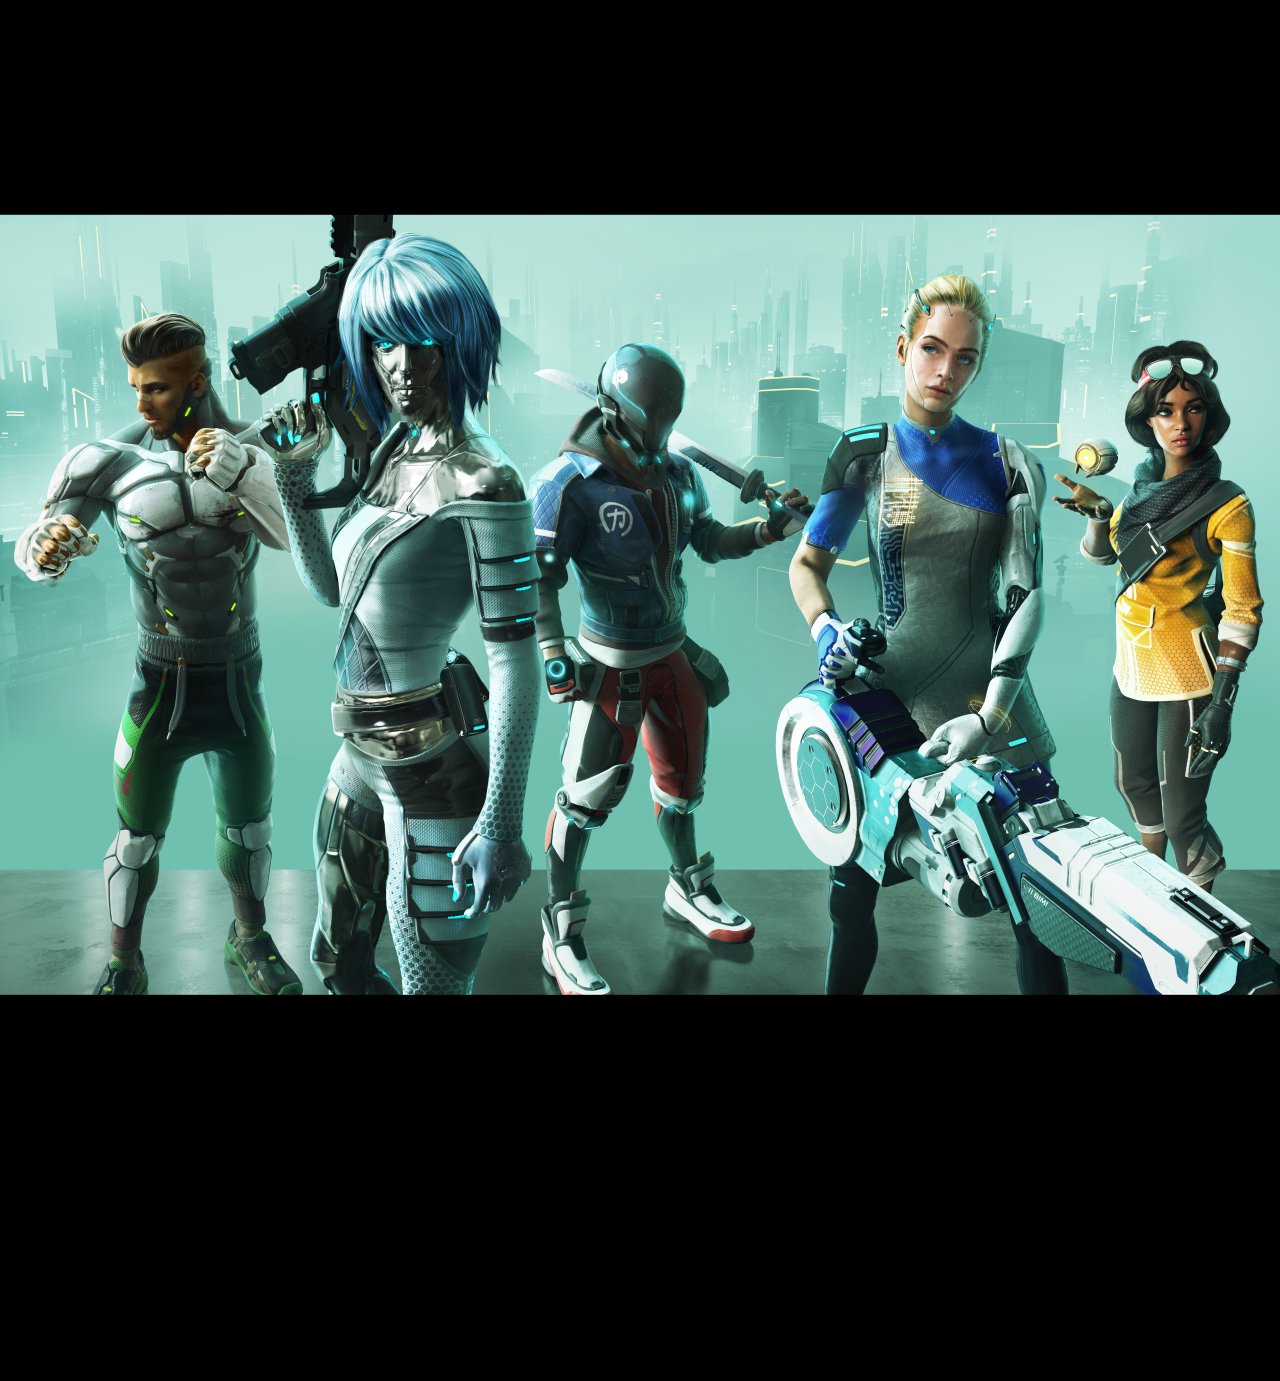 Hyper Scape se lanzará en PC, PlayStation 4 y Xbox One el próximo 11 de agosto. El nuevo Battle Royale 100% urbano